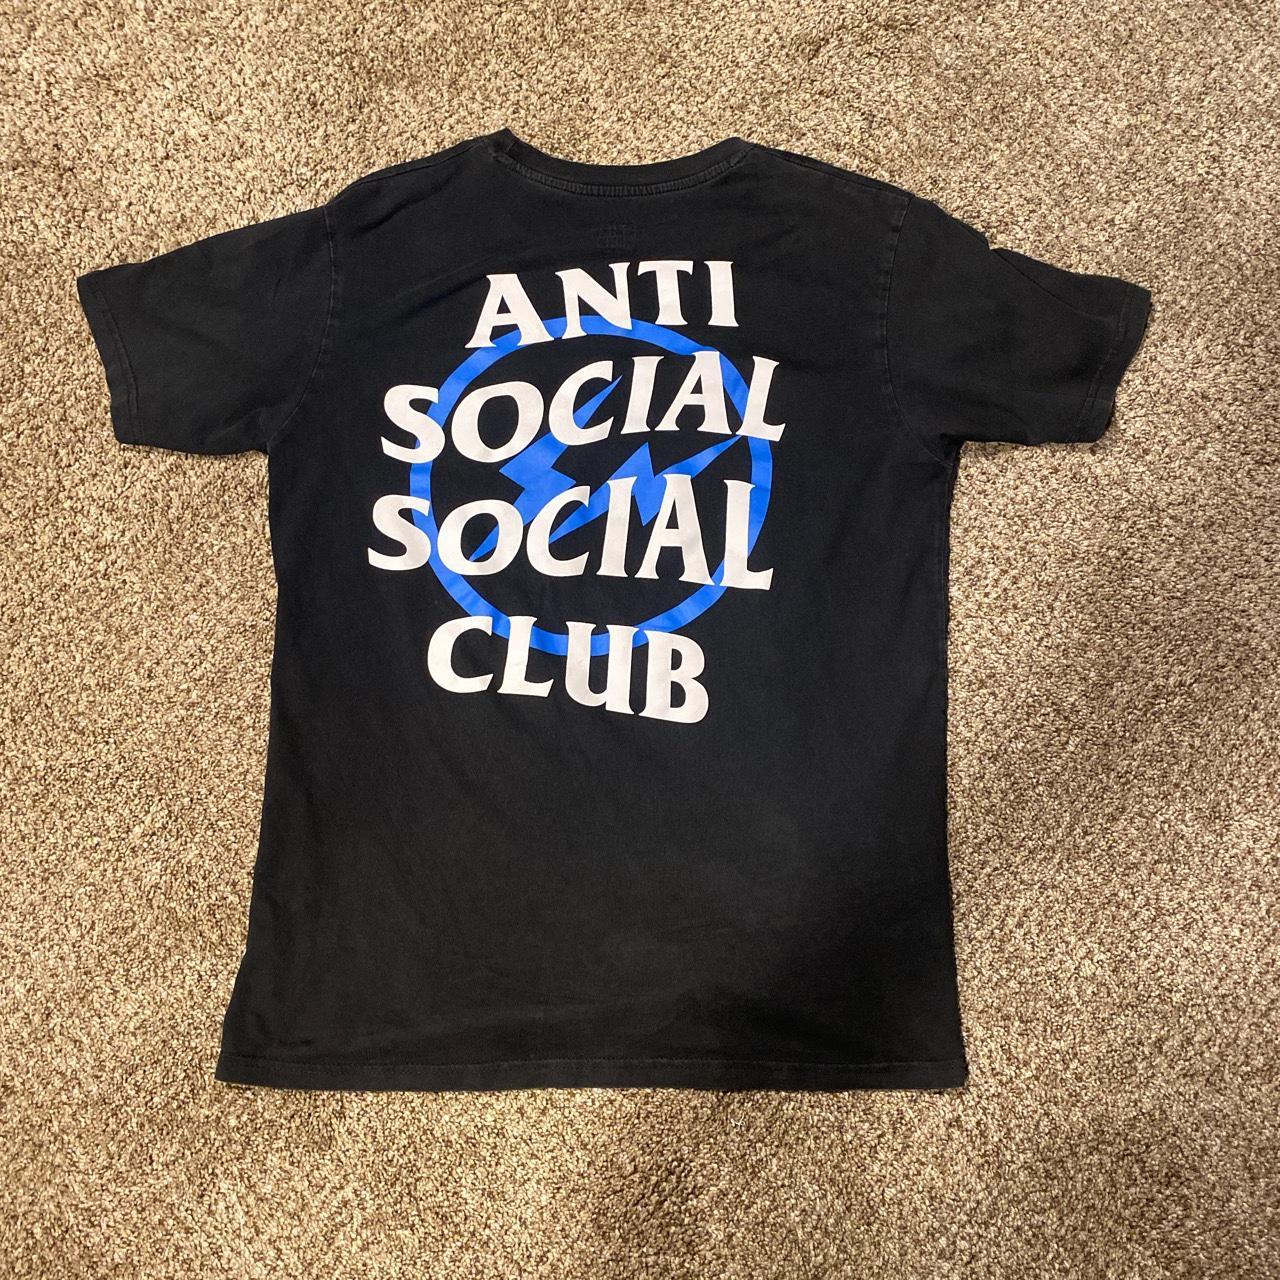 Large anti social social club x fragment shirt Very... - Depop